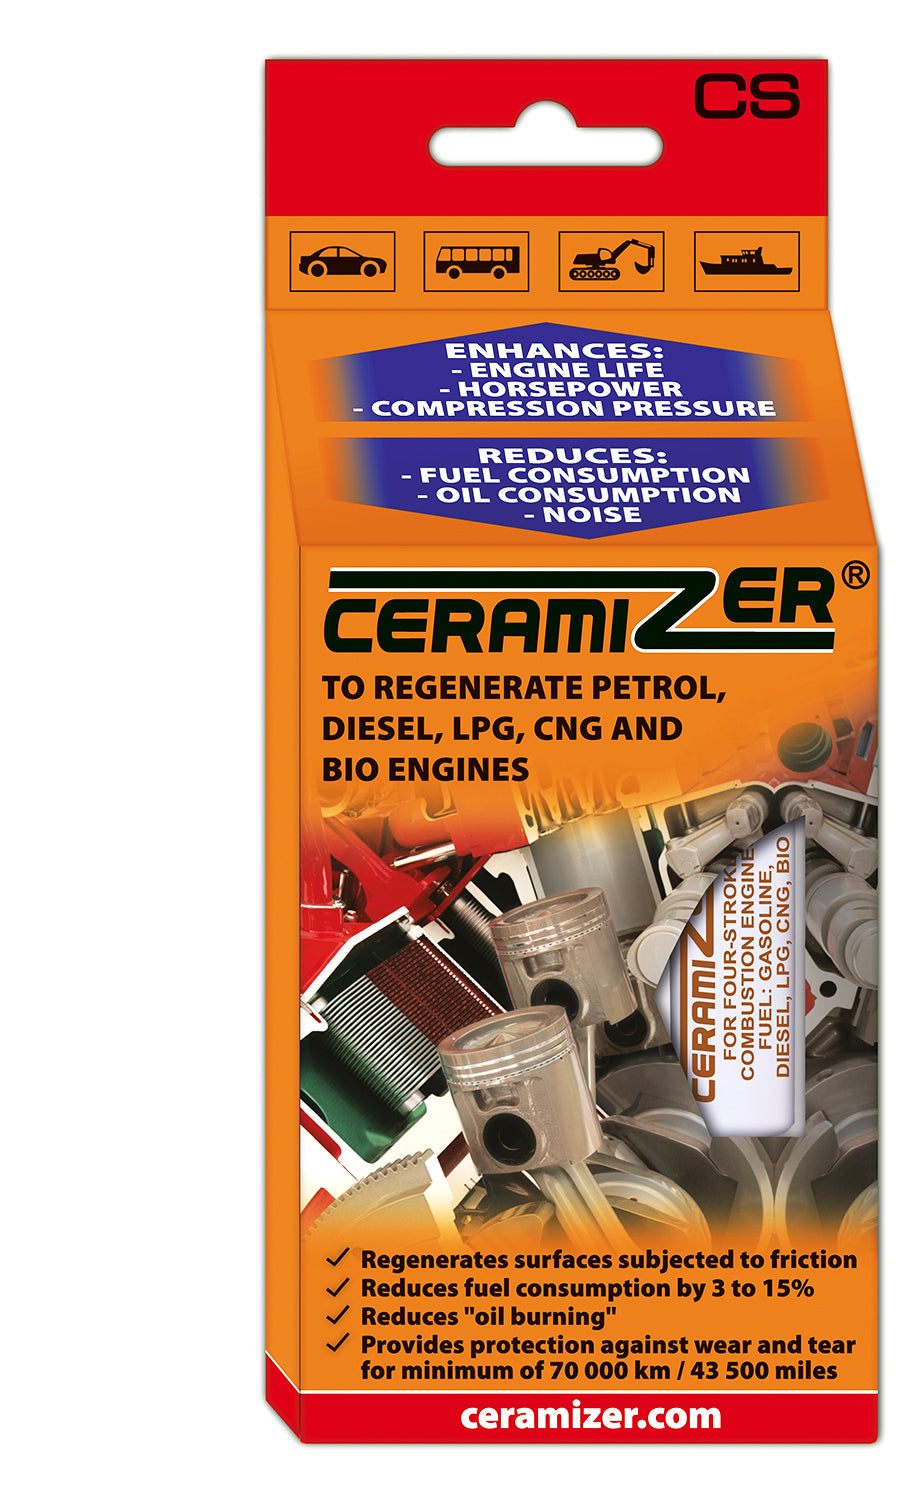 Ceramizer CS vélarbætir (fyrir bensín-, dísel- og metanvélar)